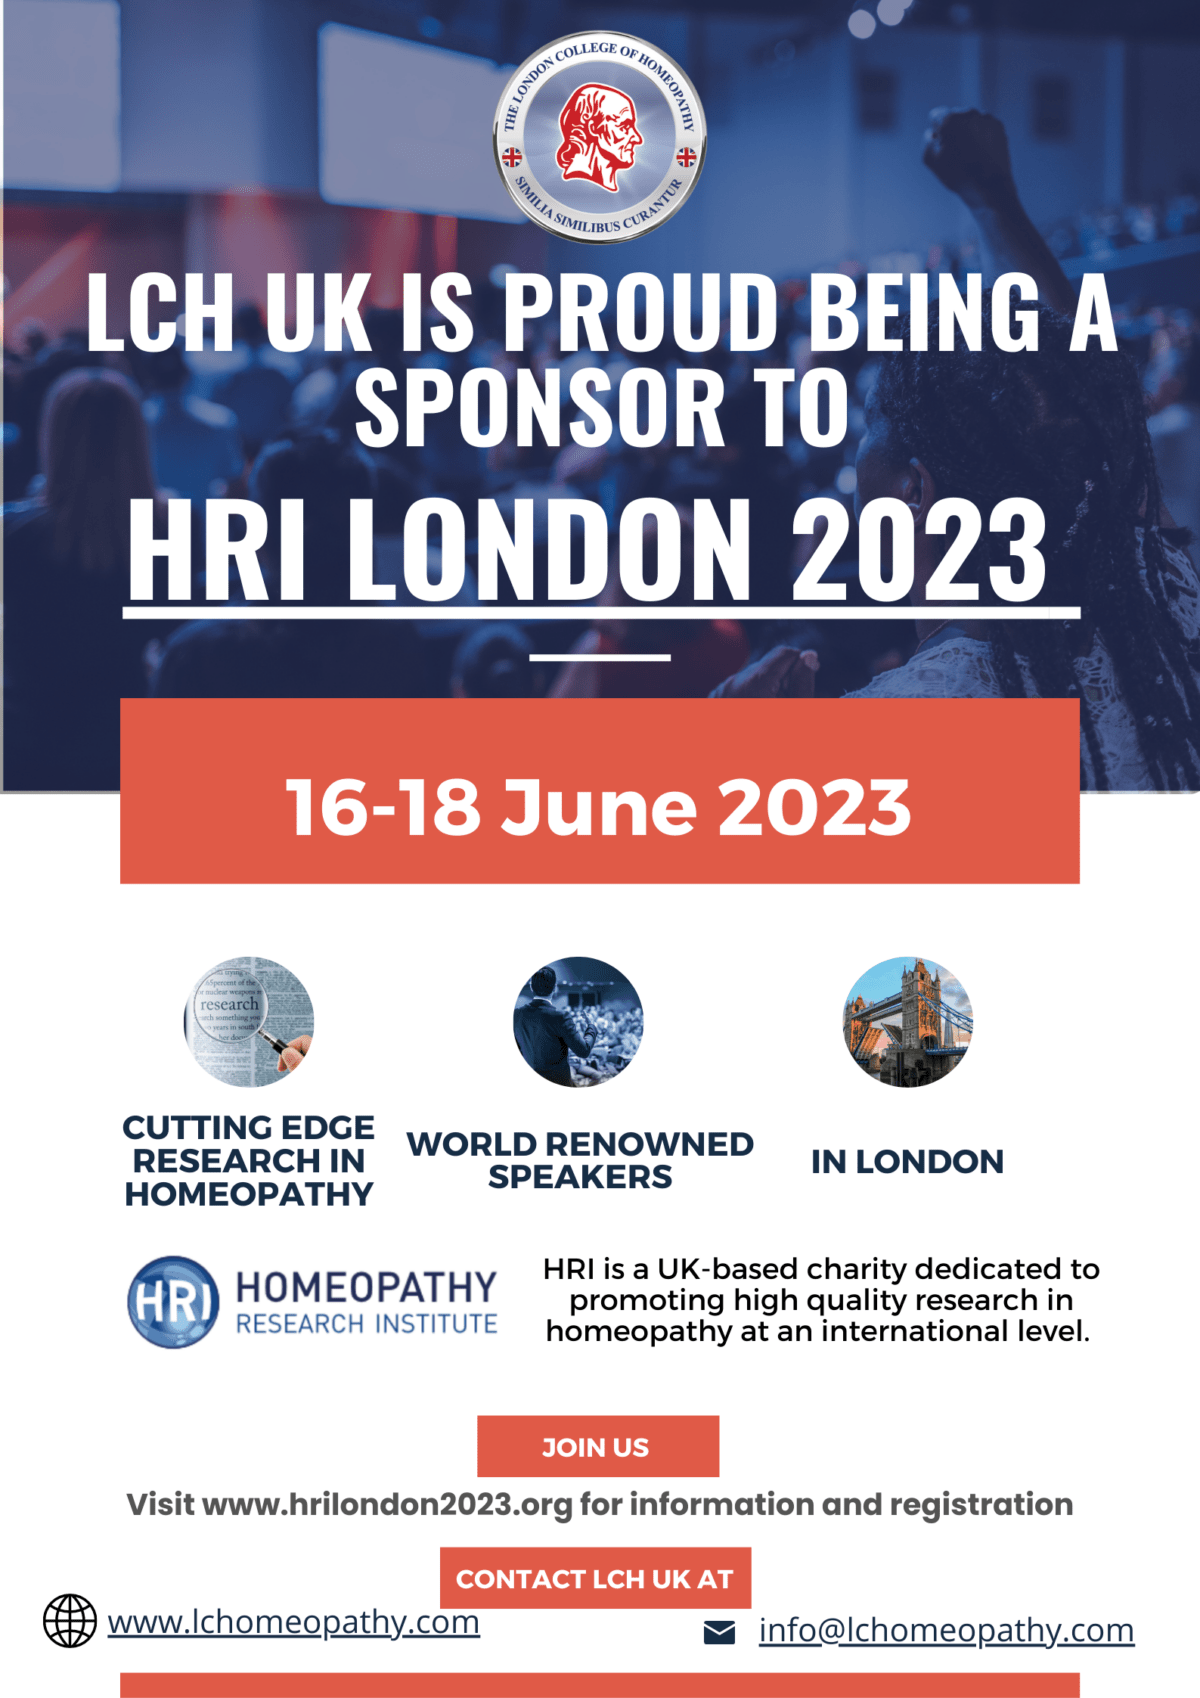 LCH UK at HRI London 2023